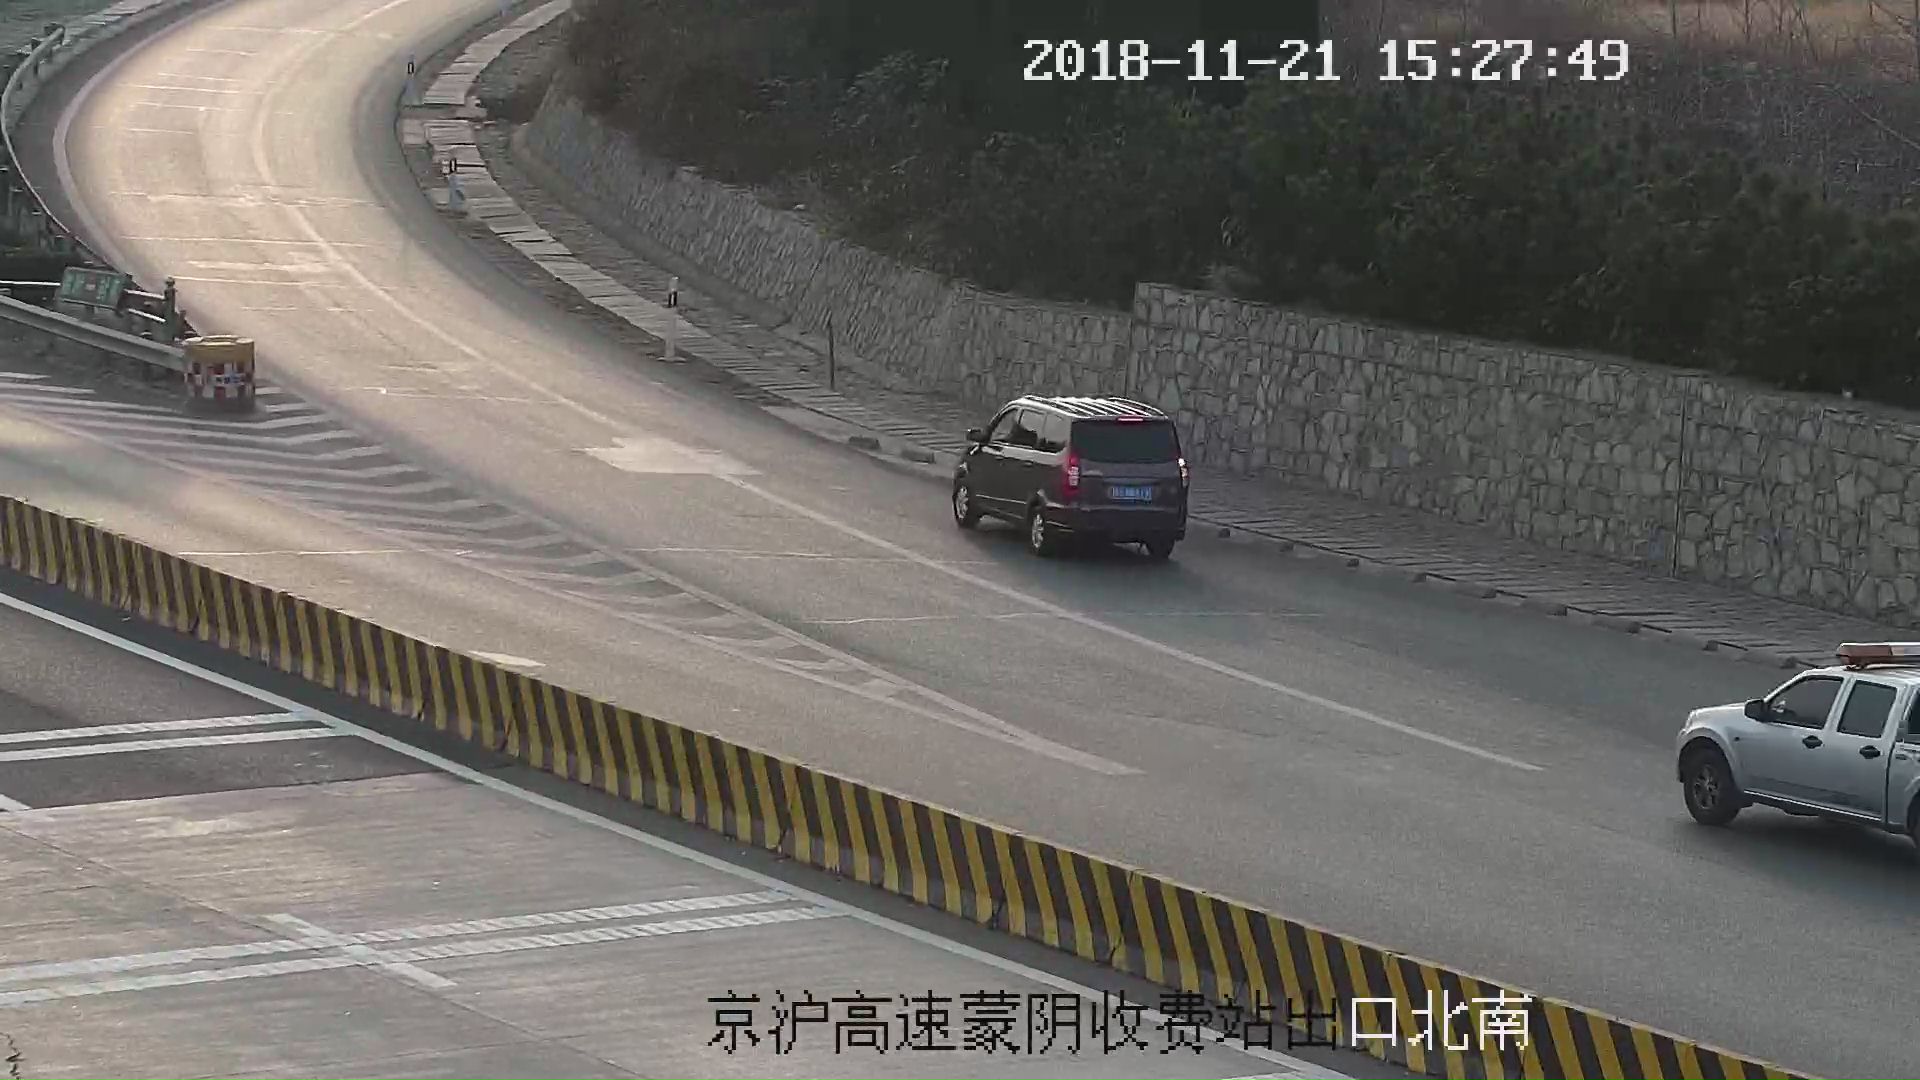 看错路标把北京当上海  高速倒车被扣12分